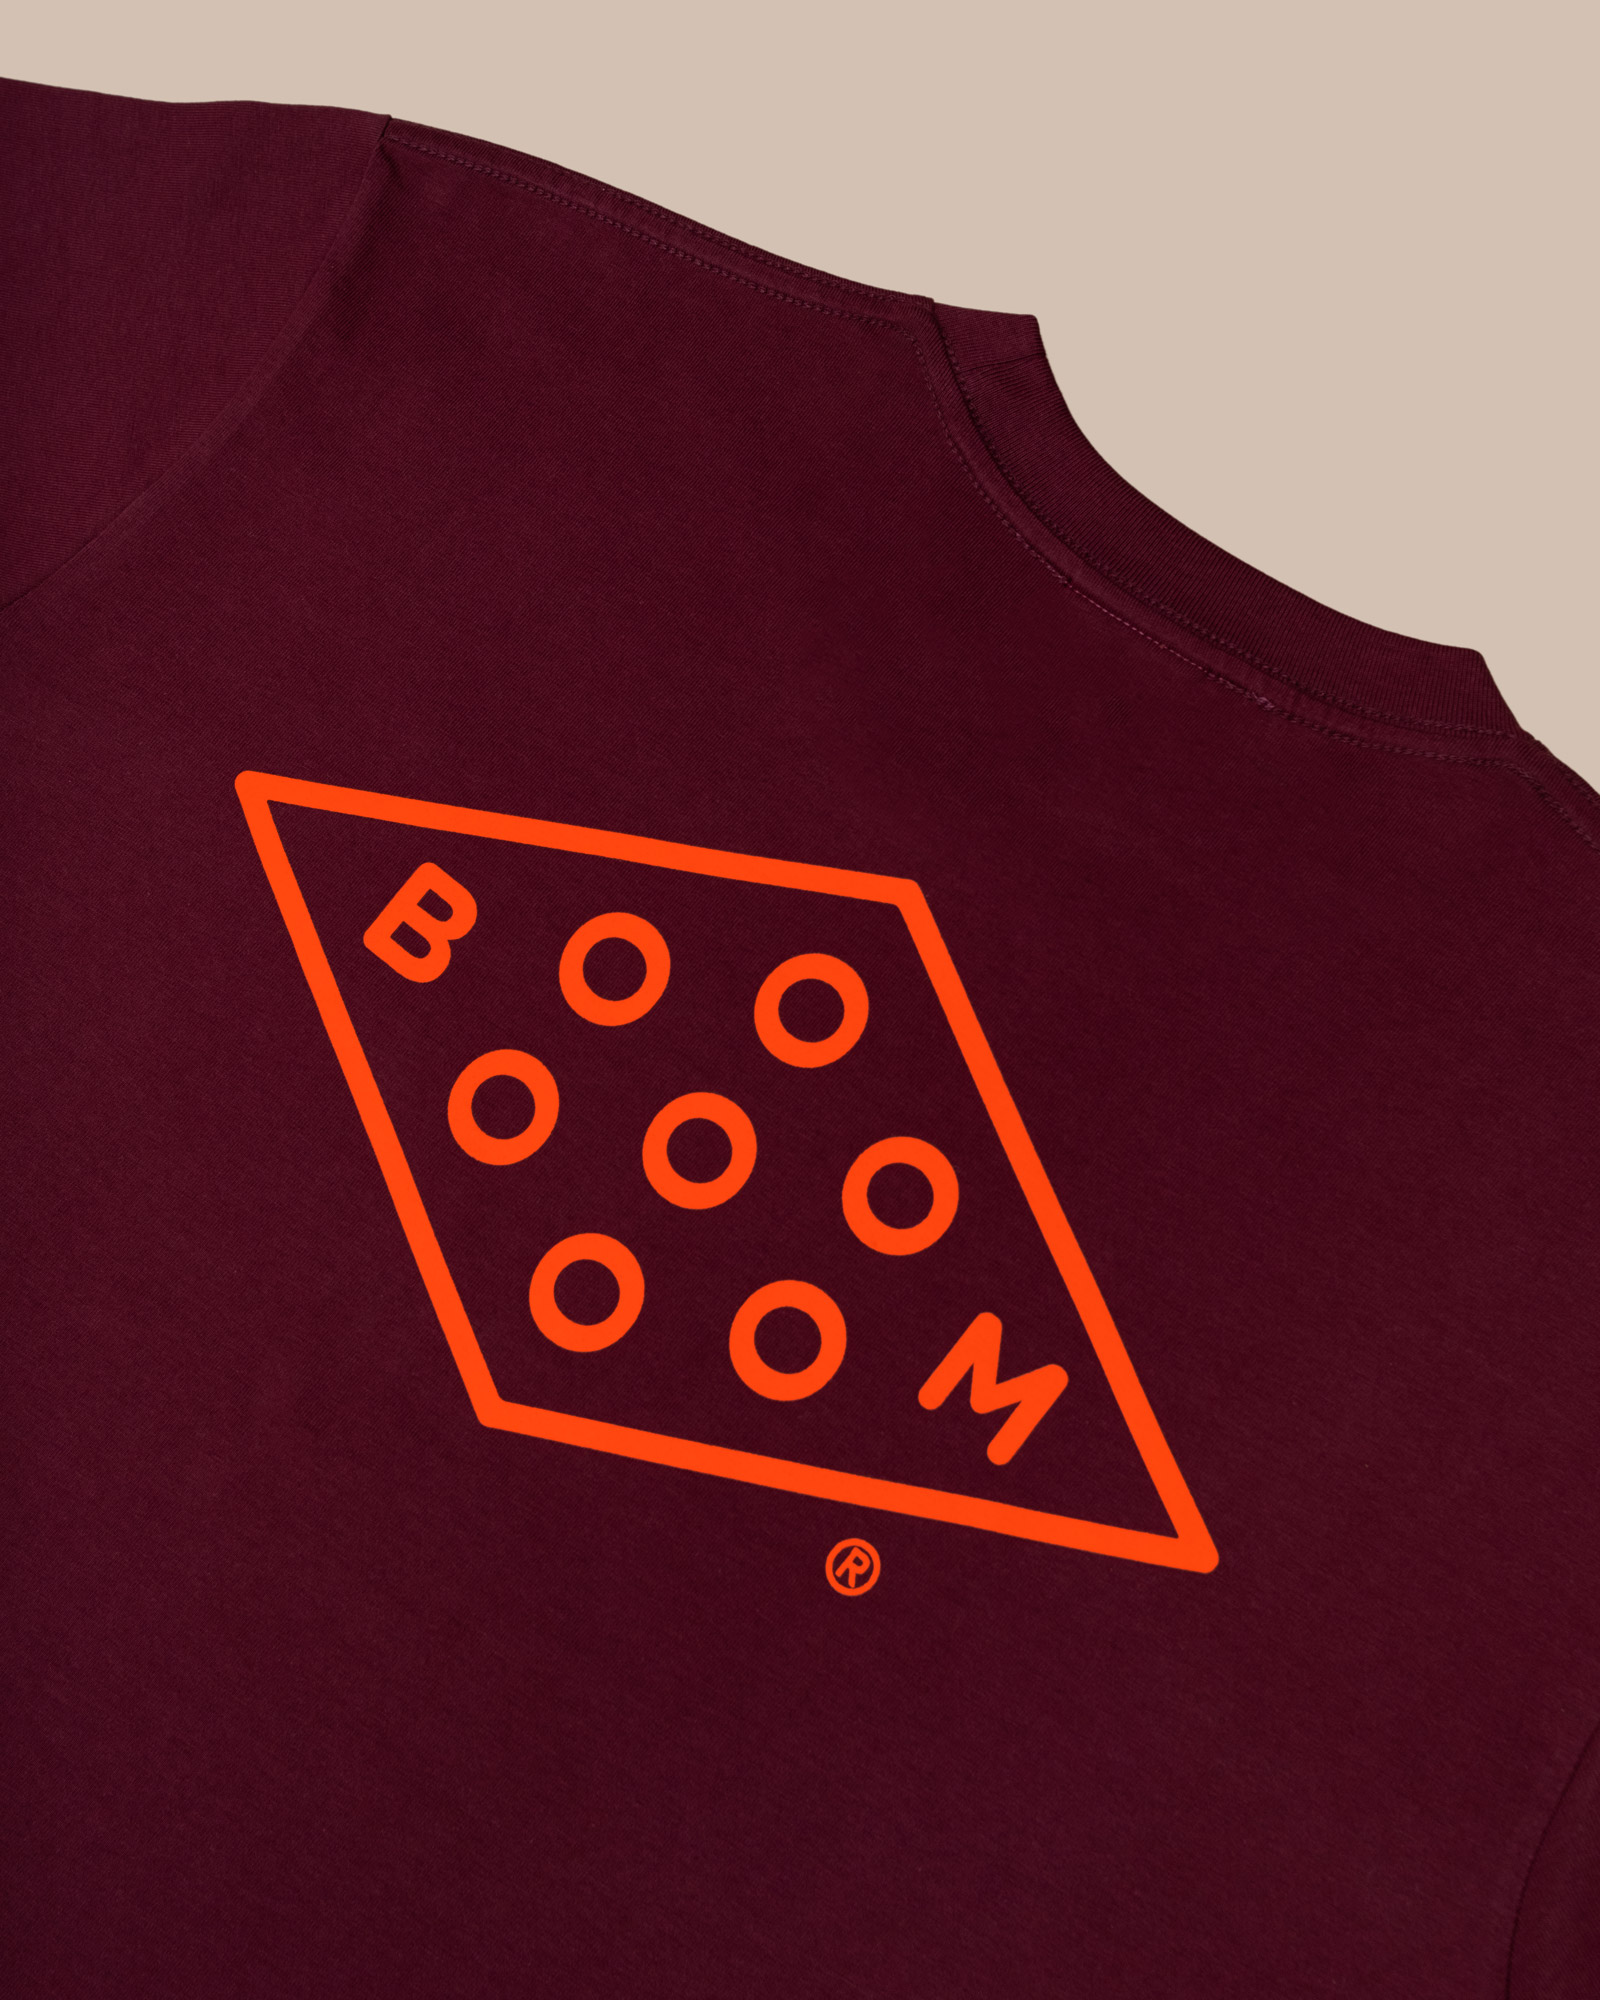 New Booooooom T-Shirts in our Shop! – BOOOOOOOM! – CREATE * INSPIRE ...